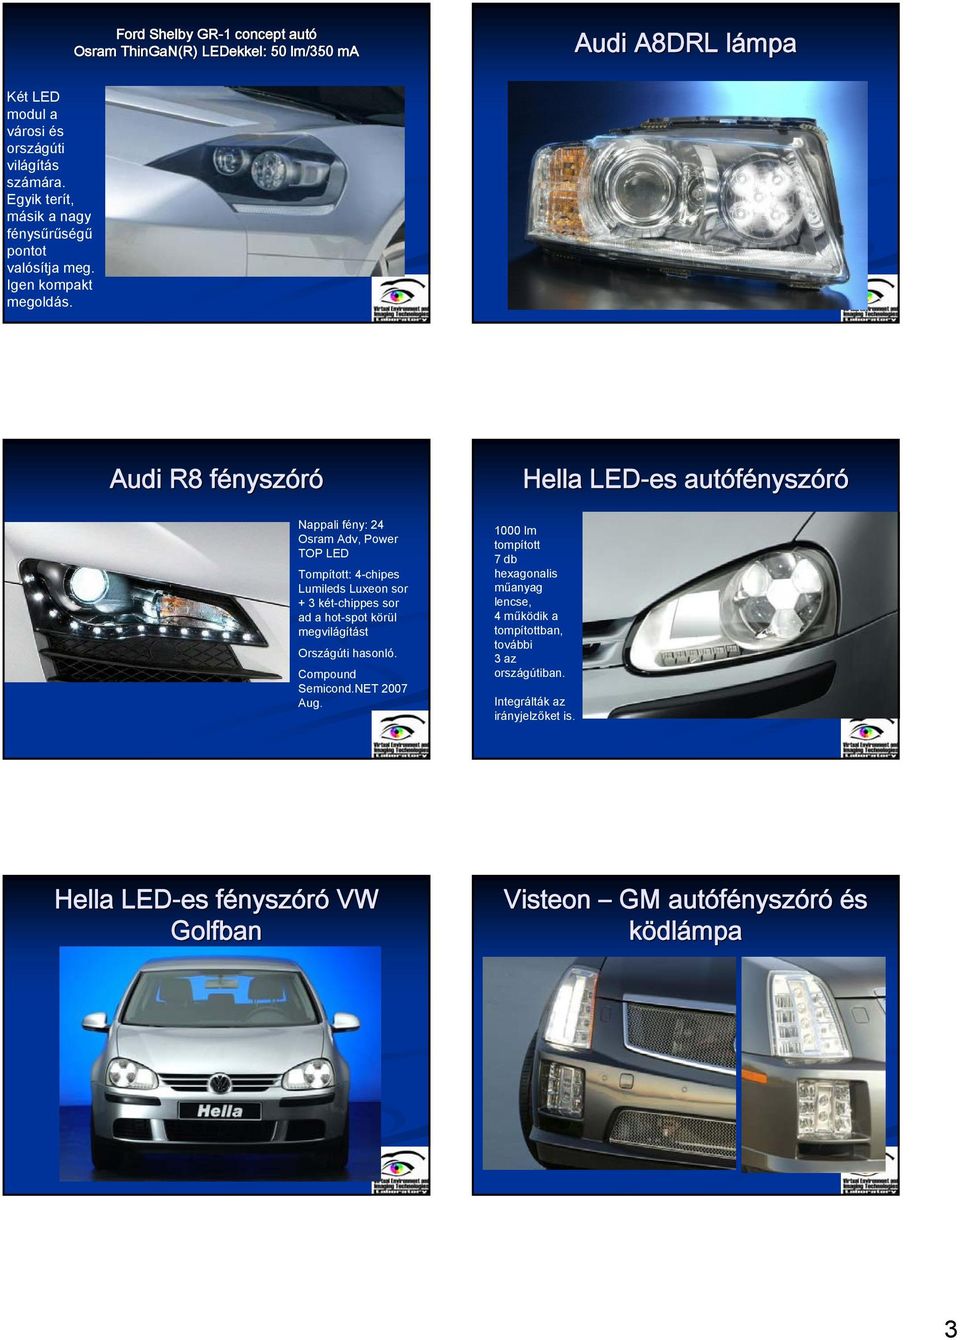 Audi R8 fényszf Hella LED-es autófénysz Nappali fény: 24 Osram Adv, Power TOP LED Tompított: 4-chipes Lumileds Luxeon sor + 3 két-chippes sor ad a hot-spot